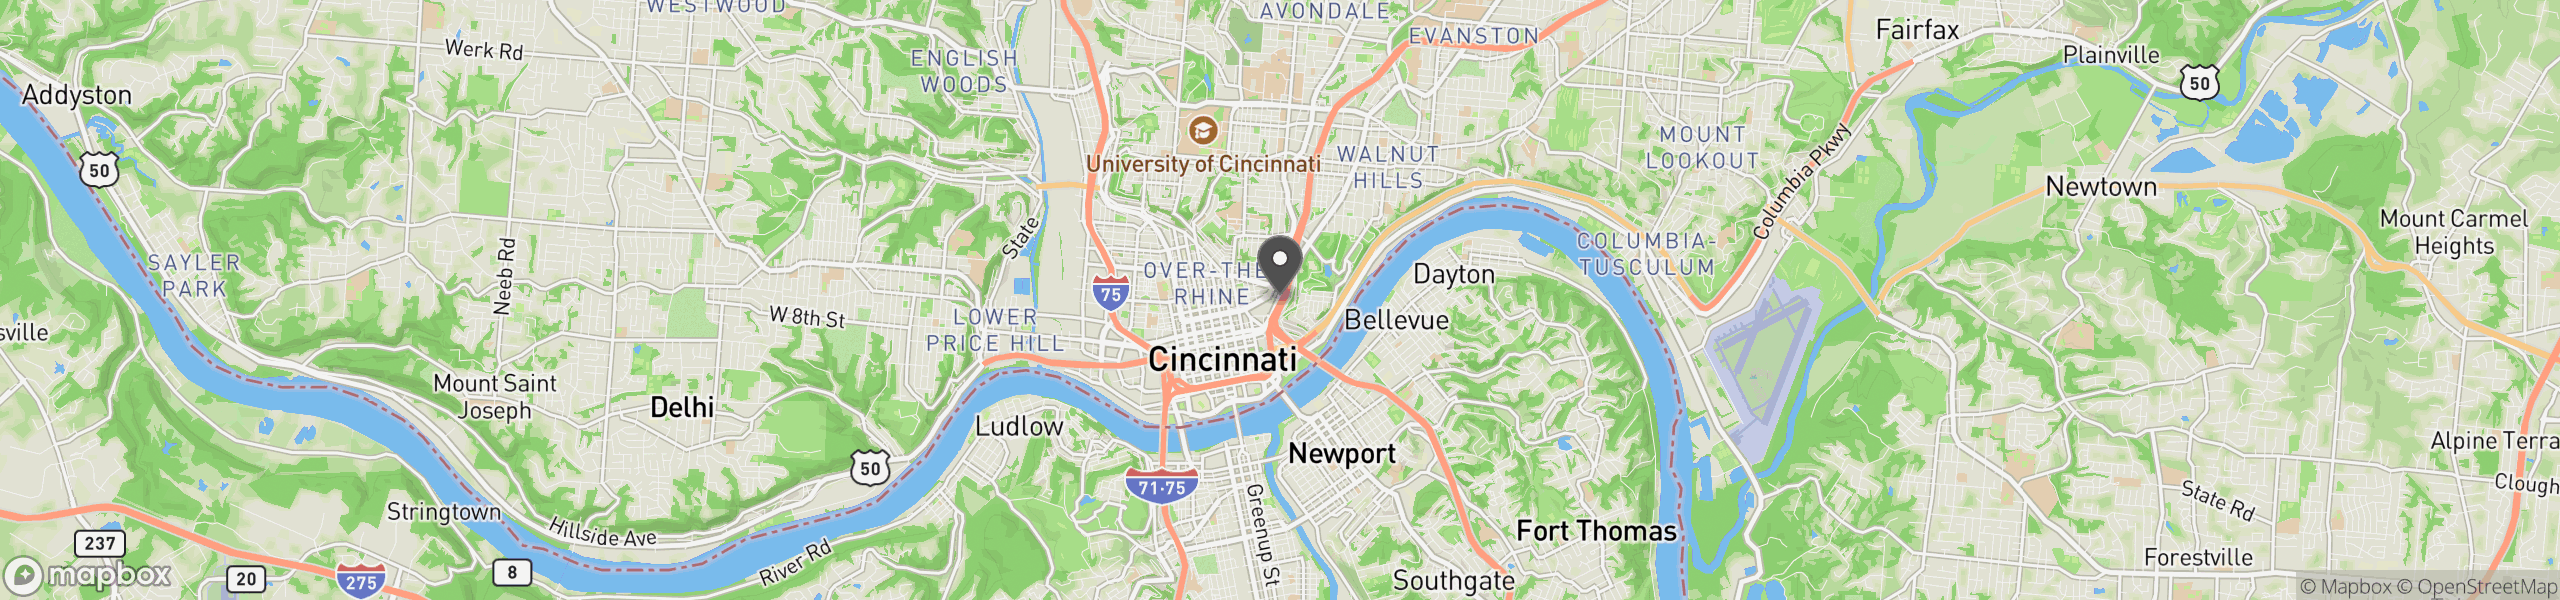 Cincinnati, OH 45202